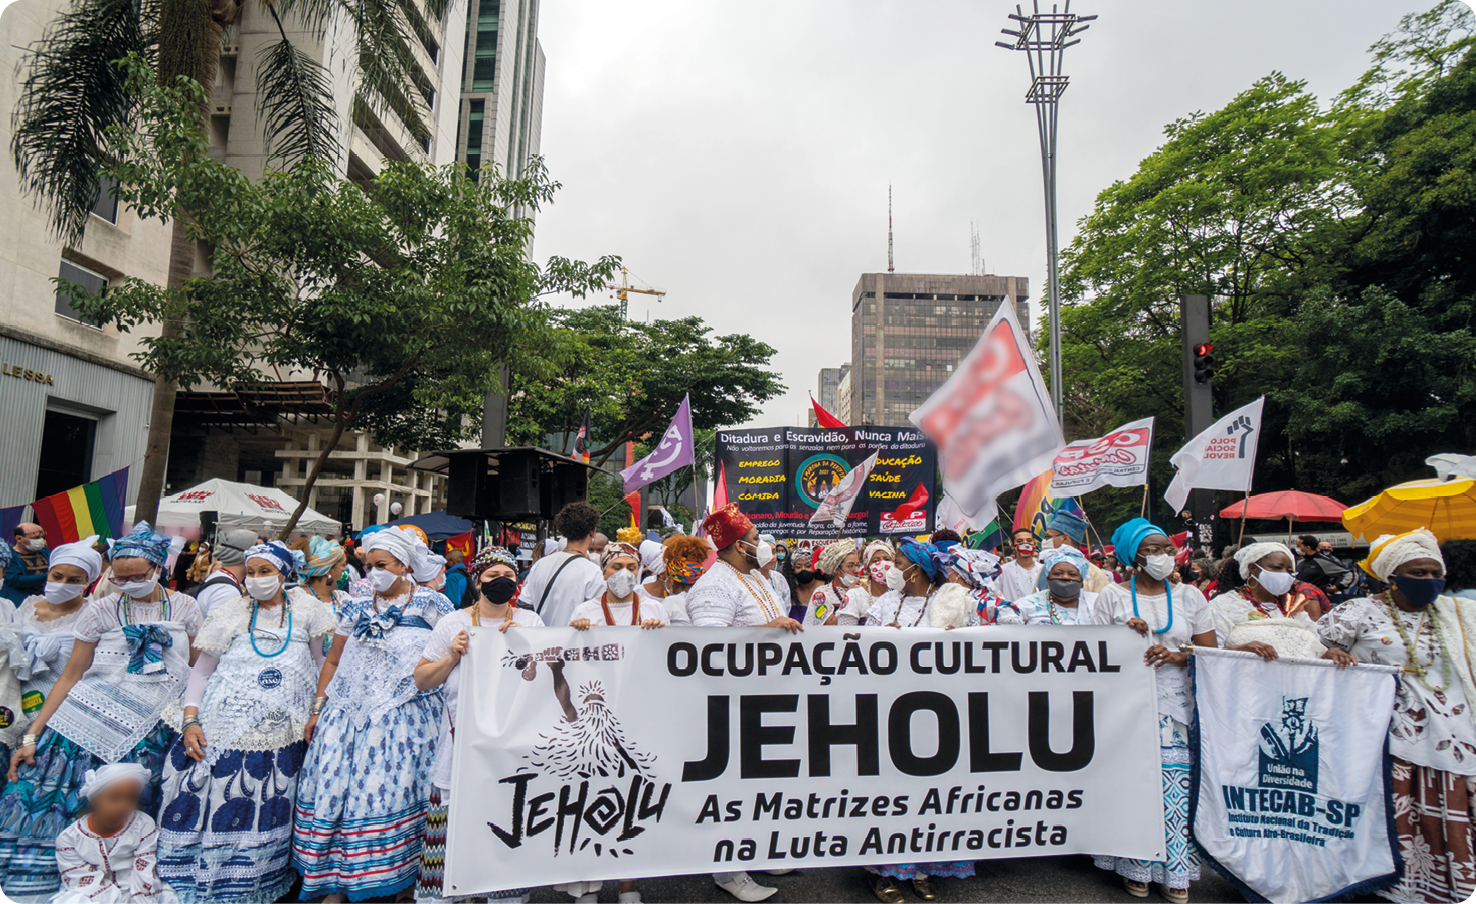 Fotografia. Mulheres negras usando turbante, vestidos rodados, carregando bandeiras e cartazes em uma rua de uma cidade. Ao redor, prédios altos. Em um dos cartazes, há o texto: OCUPAÇÃO CULTURAL JEHOLU. AS MATRIZES AFRICANAS NA LUTA ANTIRRACISTA.